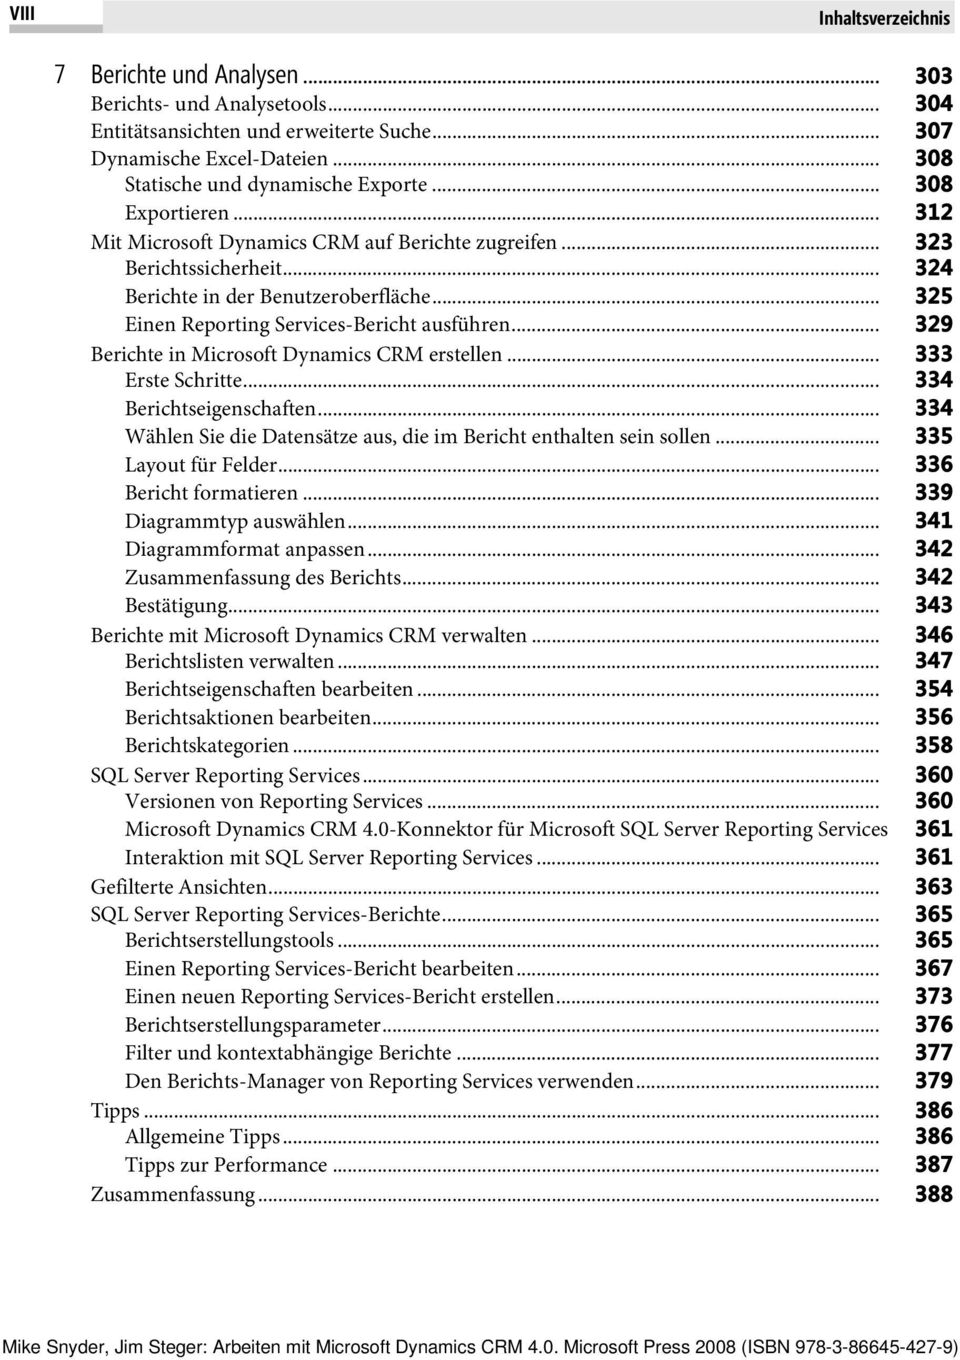 .. 329 Berichte in Microsoft Dynamics CRM erstellen... 333 Erste Schritte... 334 Berichtseigenschaften... 334 Wählen Sie die Datensätze aus, die im Bericht enthalten sein sollen.